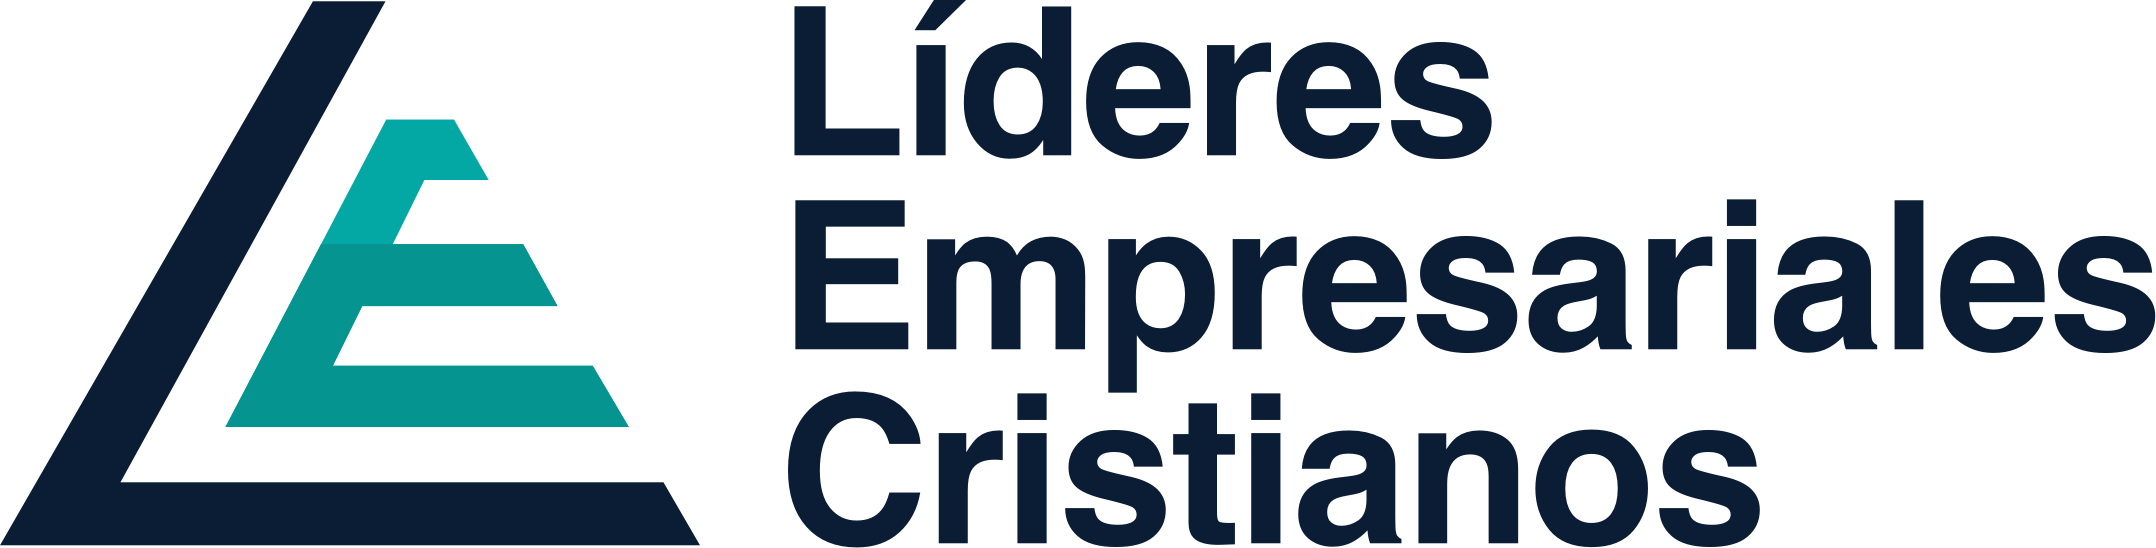 Líderes empresariales cristianos